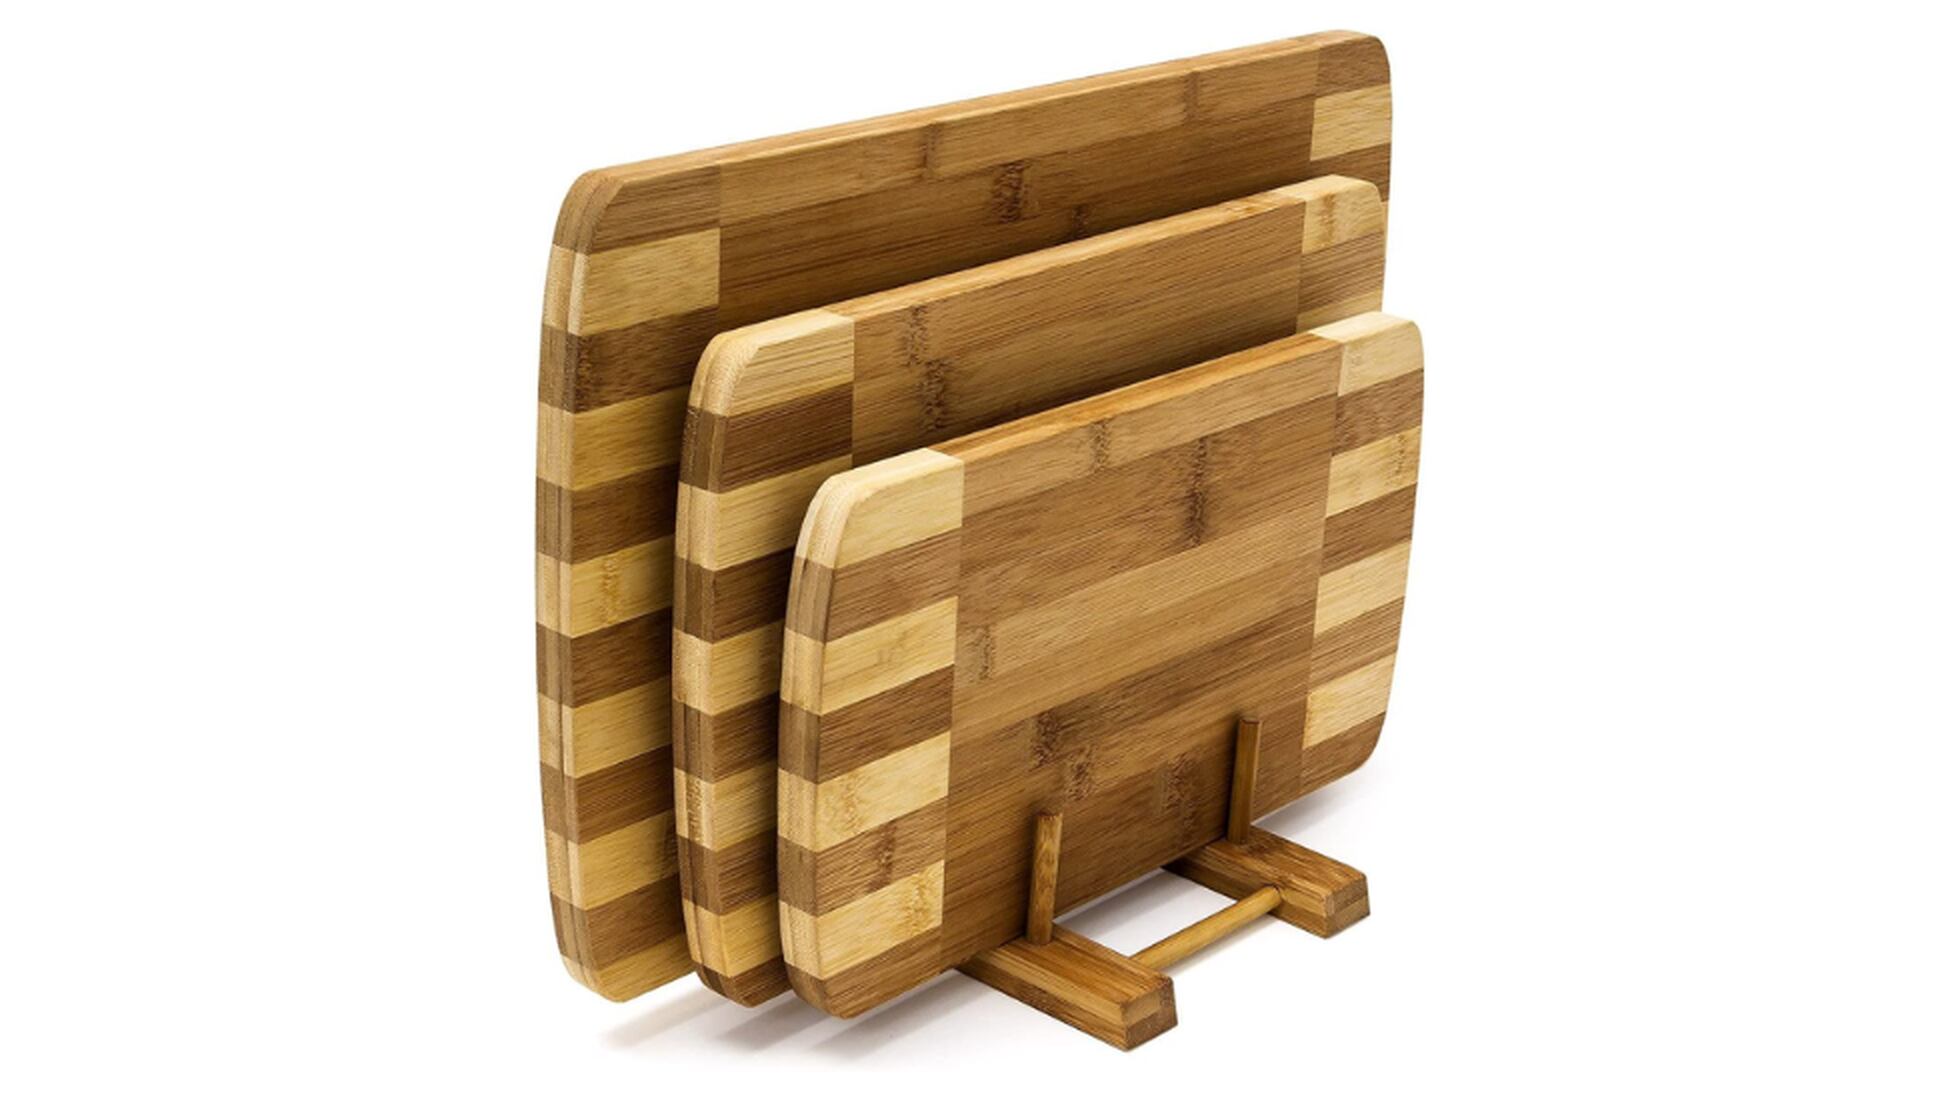  Tabla de madera para bricolaje de uso amplio y